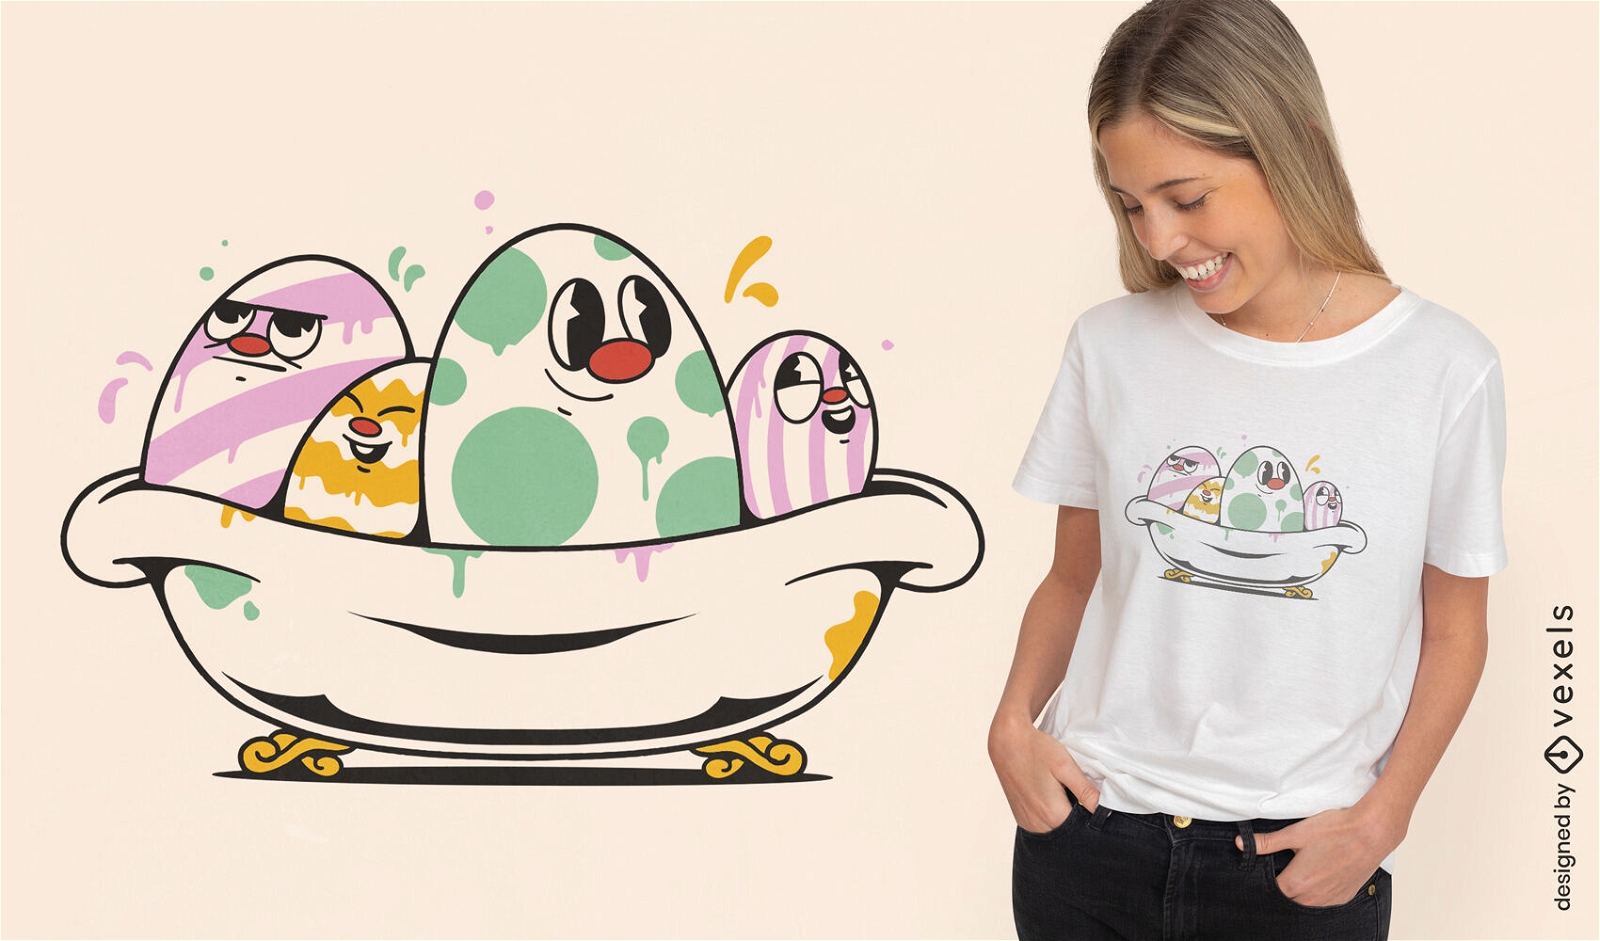 Easter eggs freshl painted t-shirt design